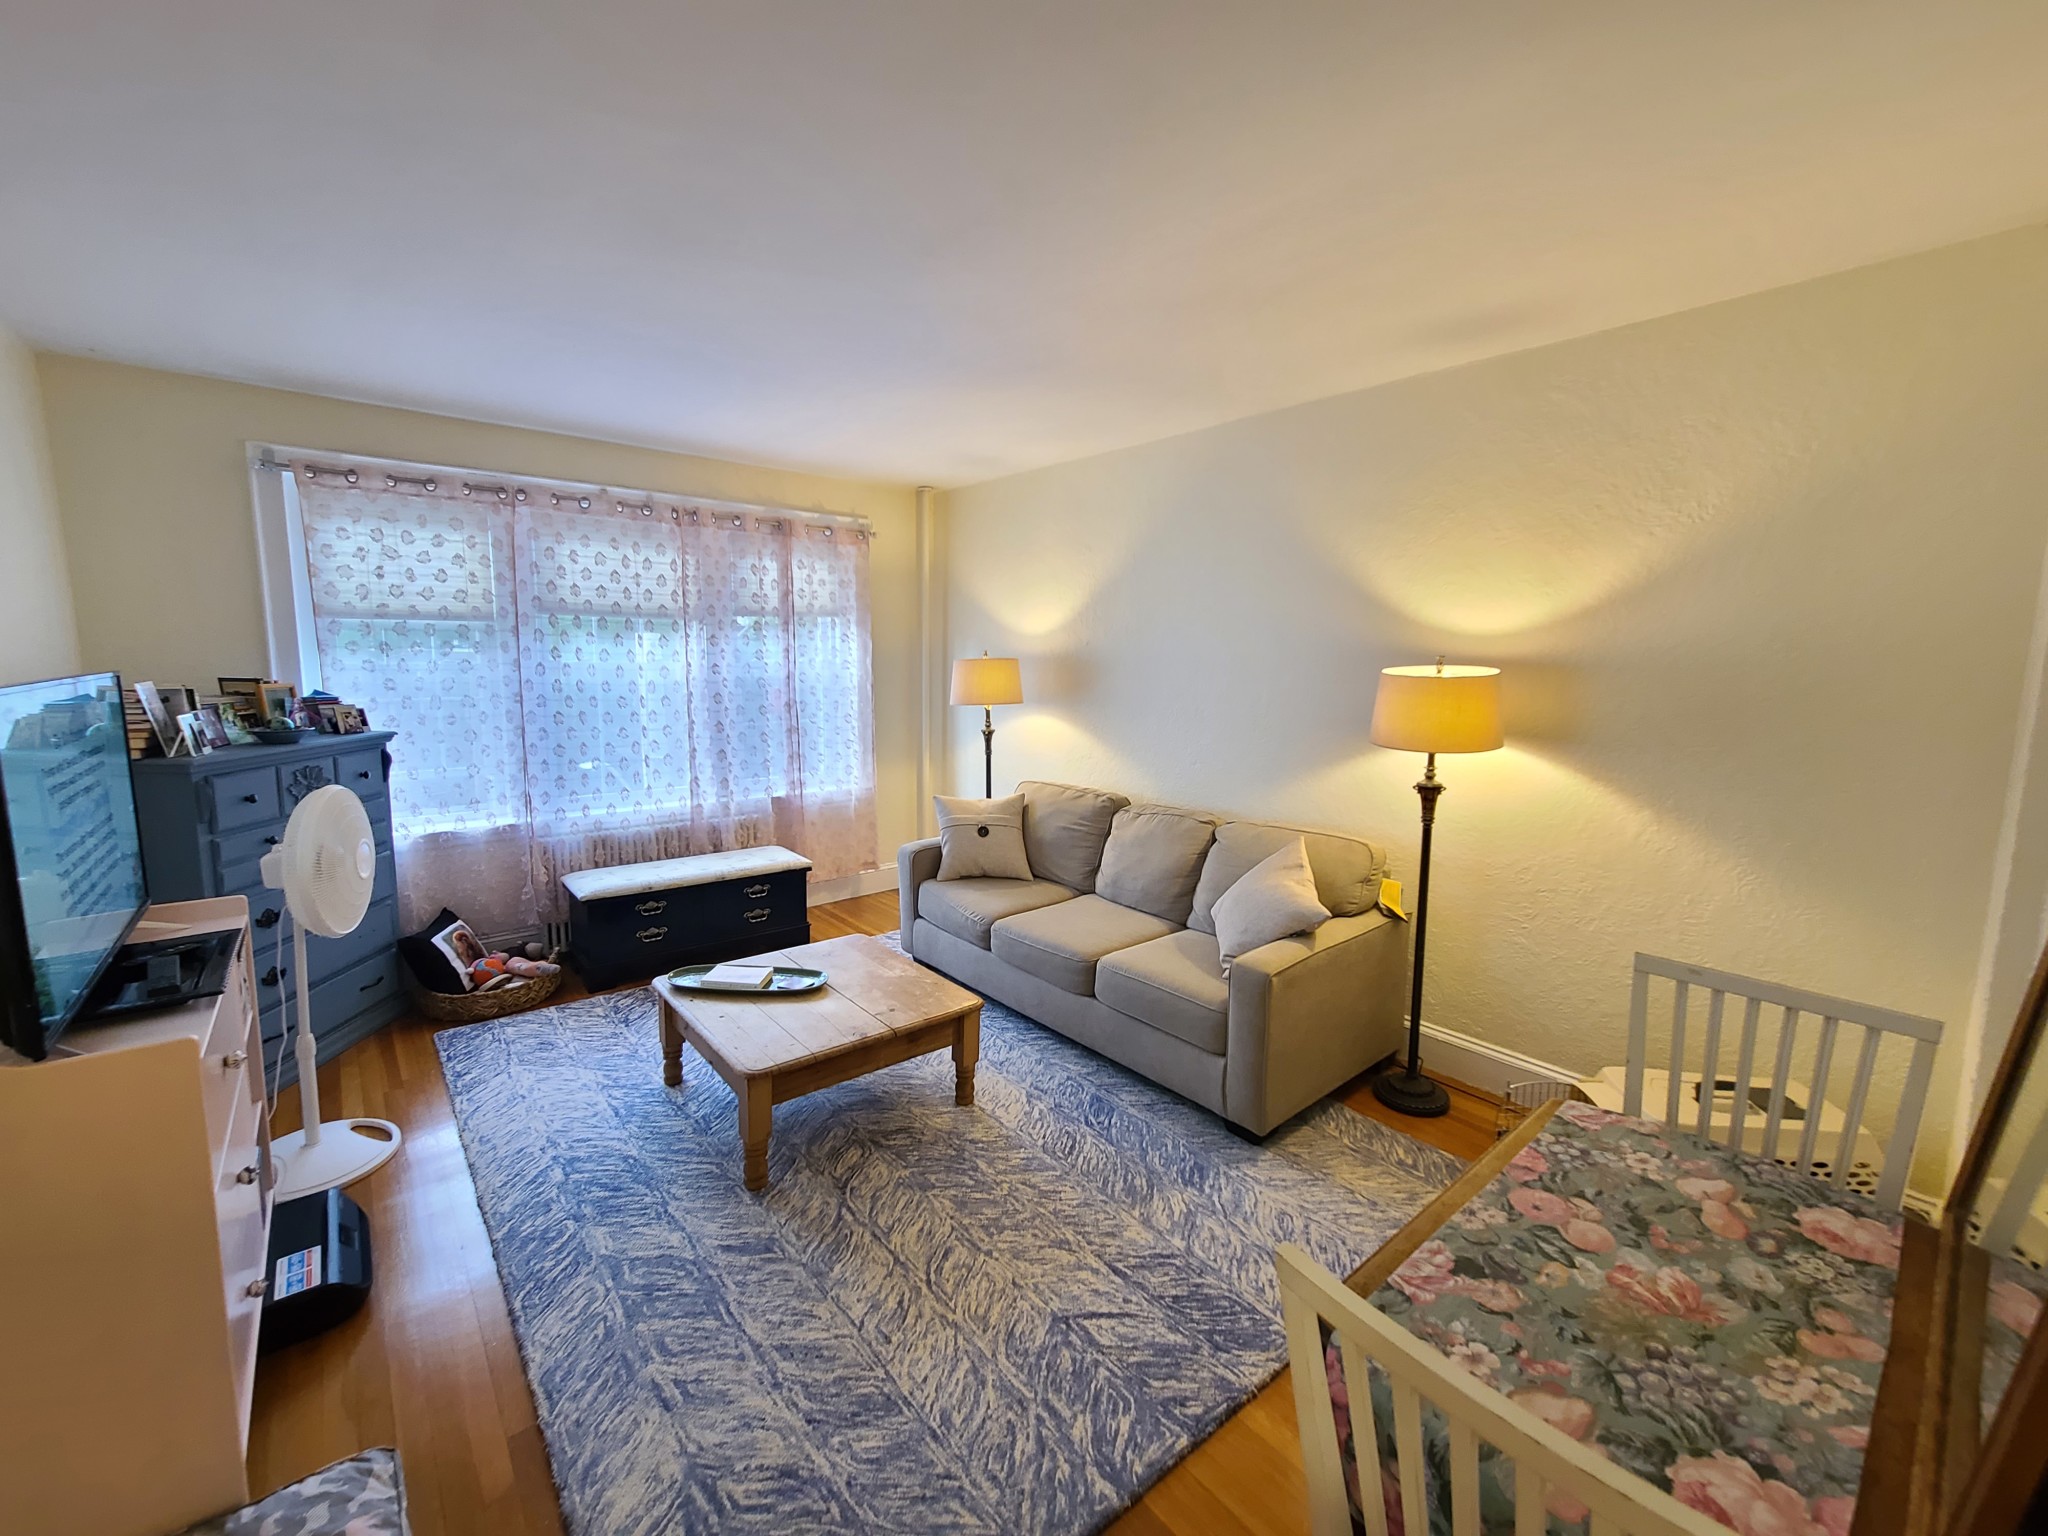 Photos of apartment on Kilsyth,Boston MA 02135